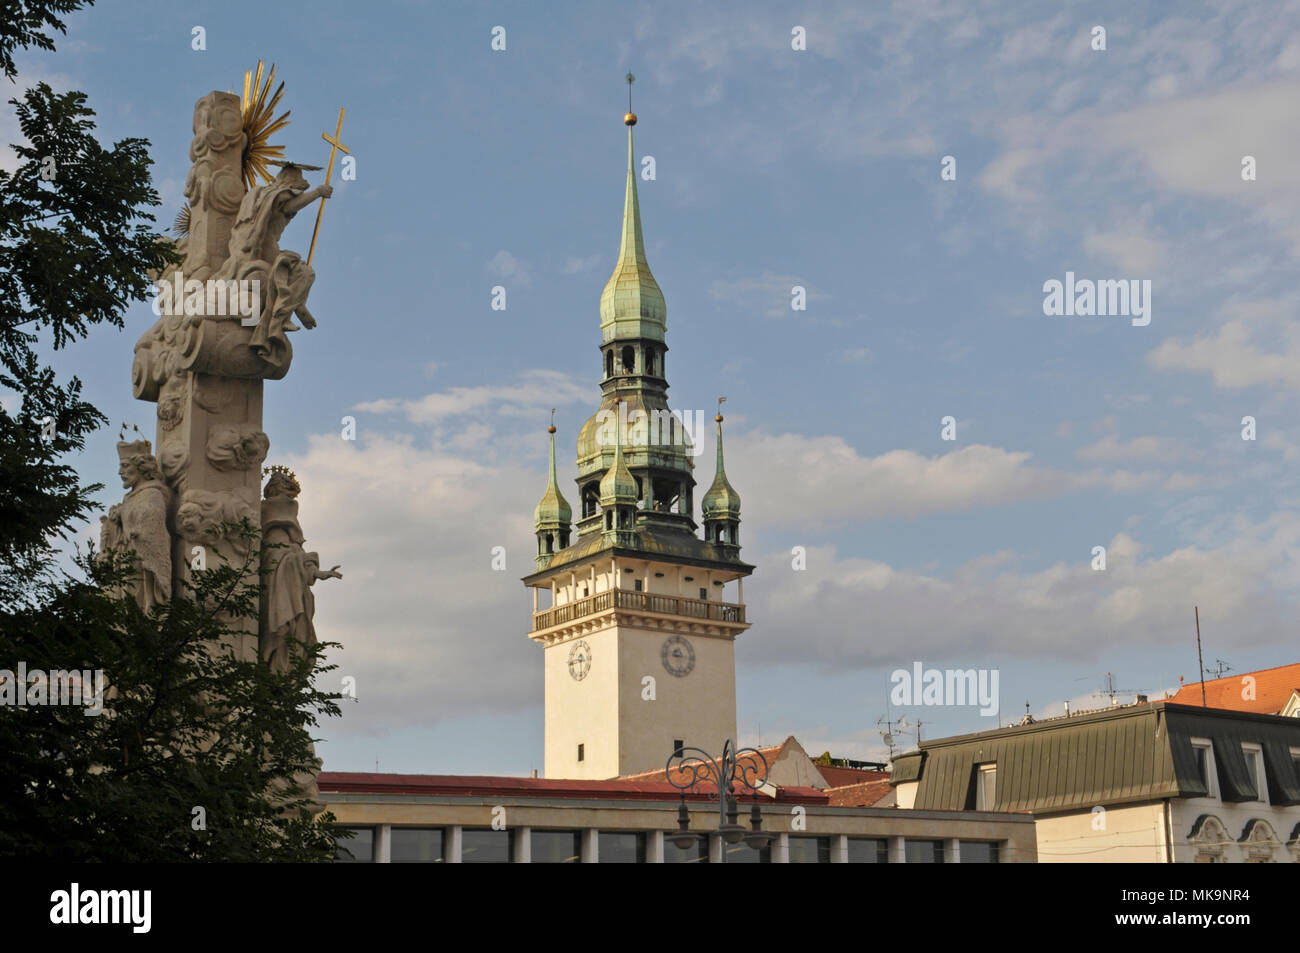 Holy Trinity Column (Sloup Nejsvětější Trojice) and the tower of the Old Town Hall (Stará radnice) in Brno, Czech Republic Stock Photo